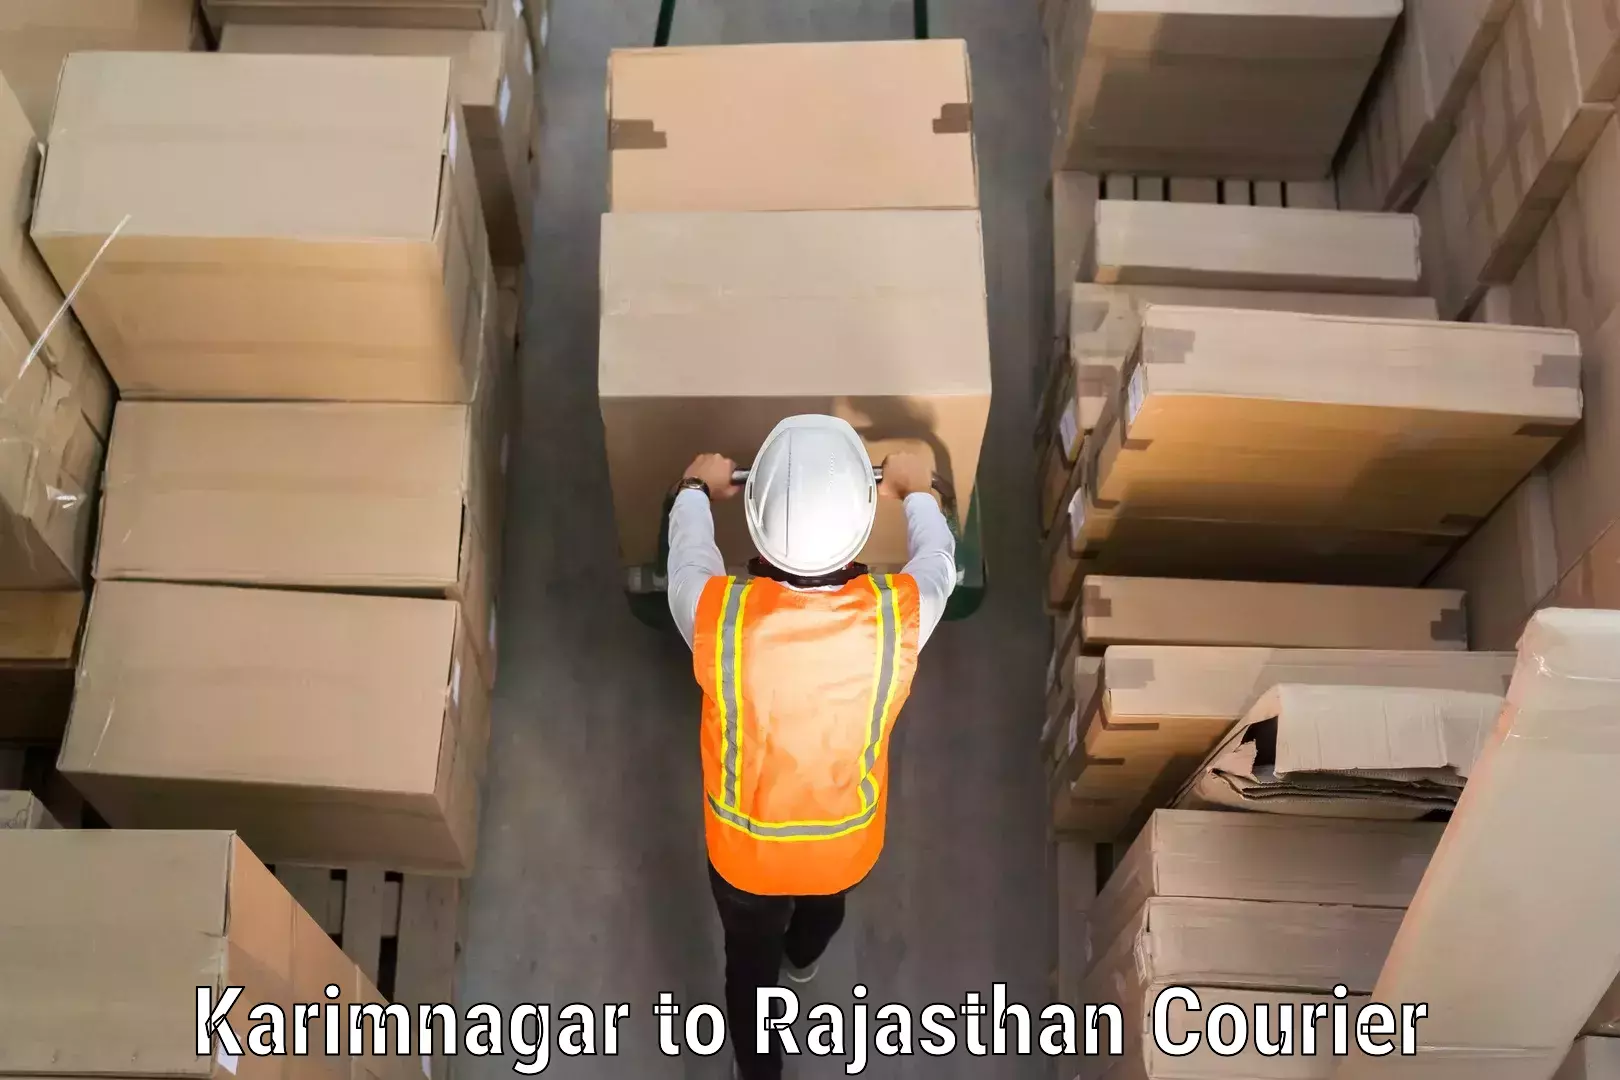 Baggage transport technology Karimnagar to Rajasthan